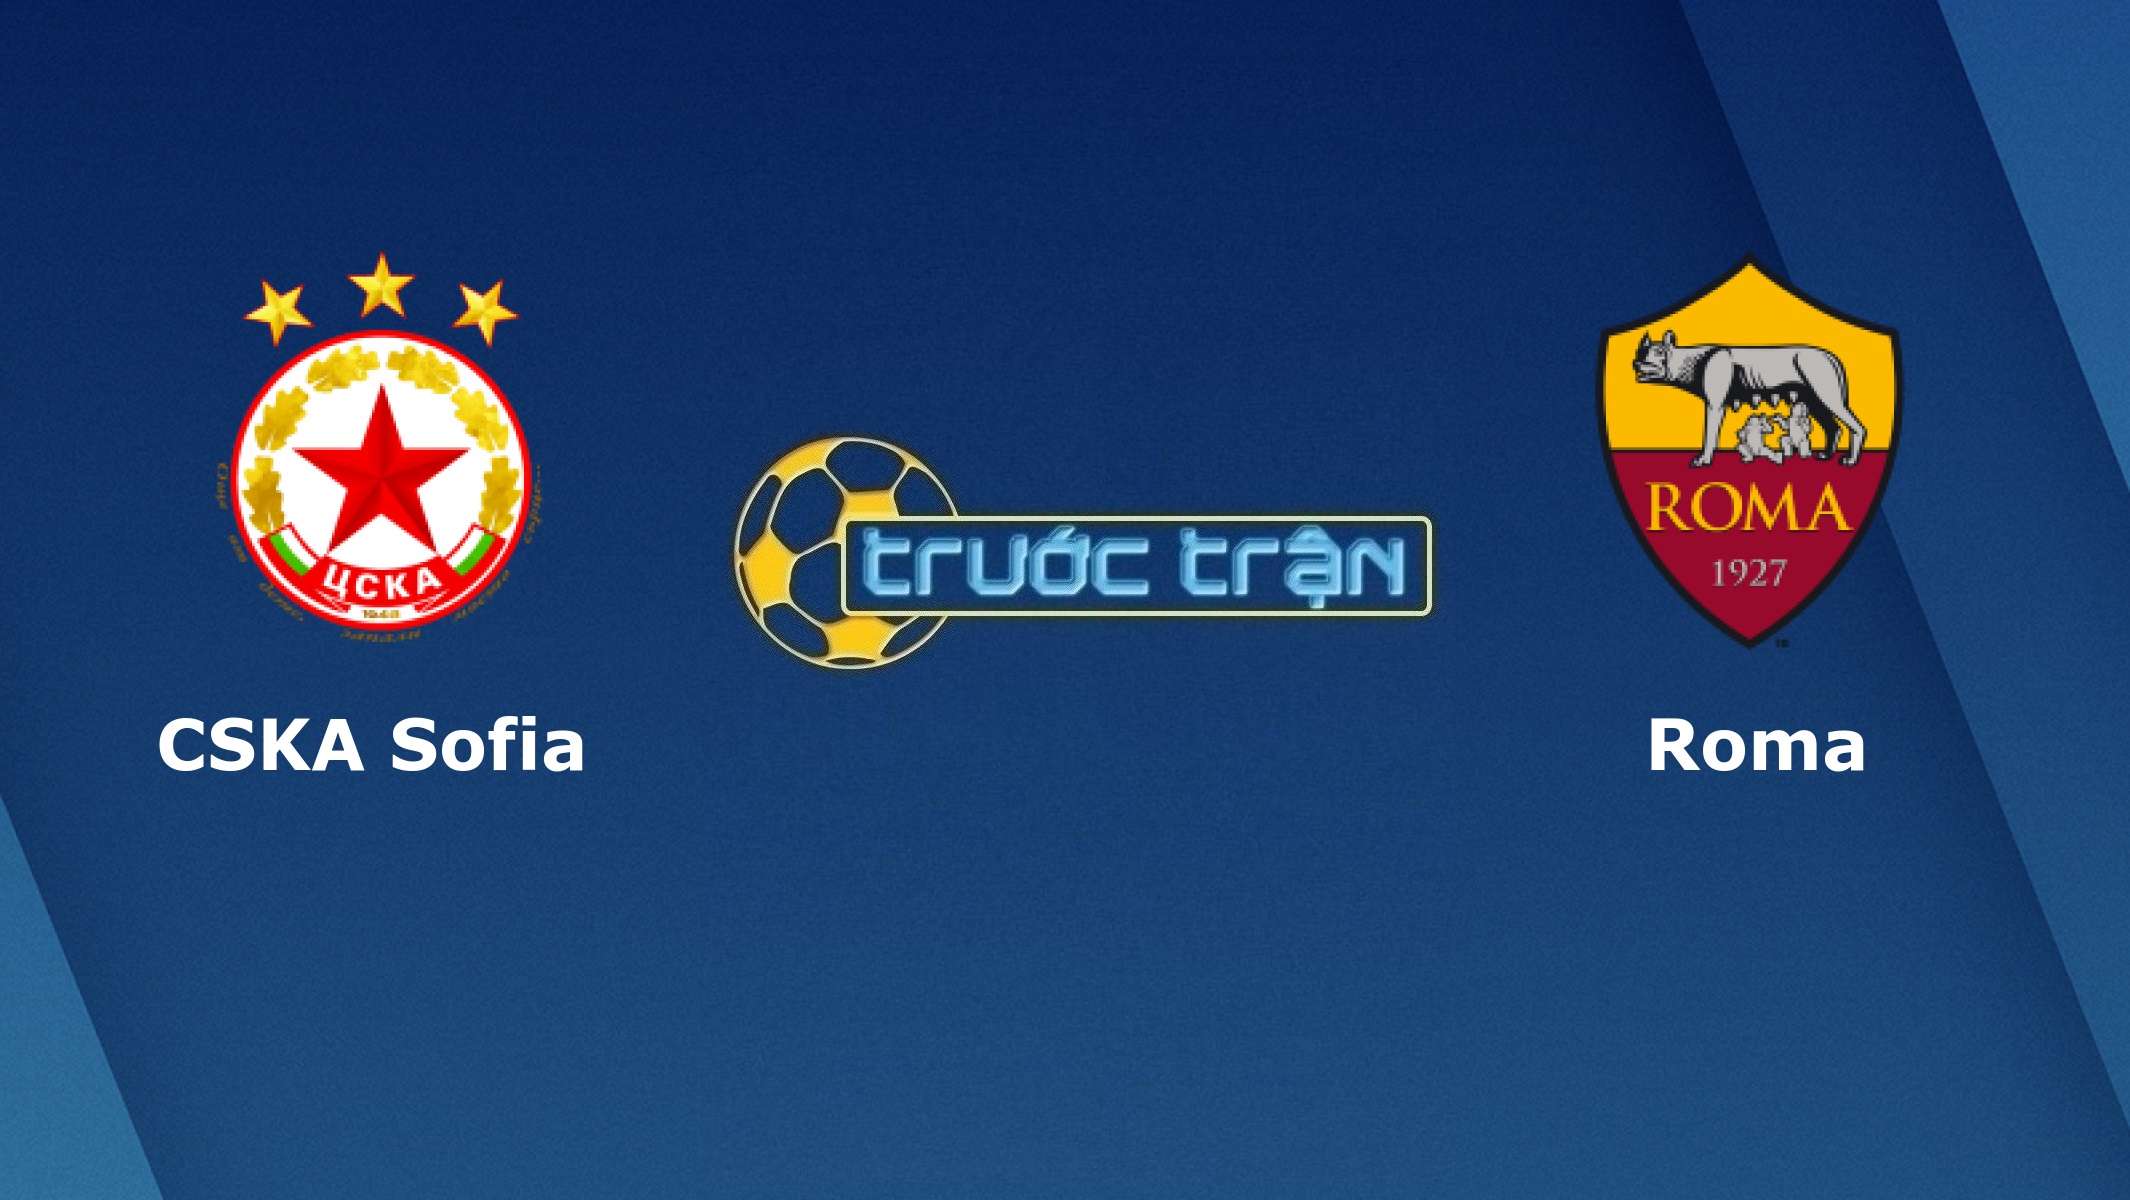 CSKA Sofia vs AS Roma – Tip kèo bóng đá hôm nay – 00h55 11/12/2020